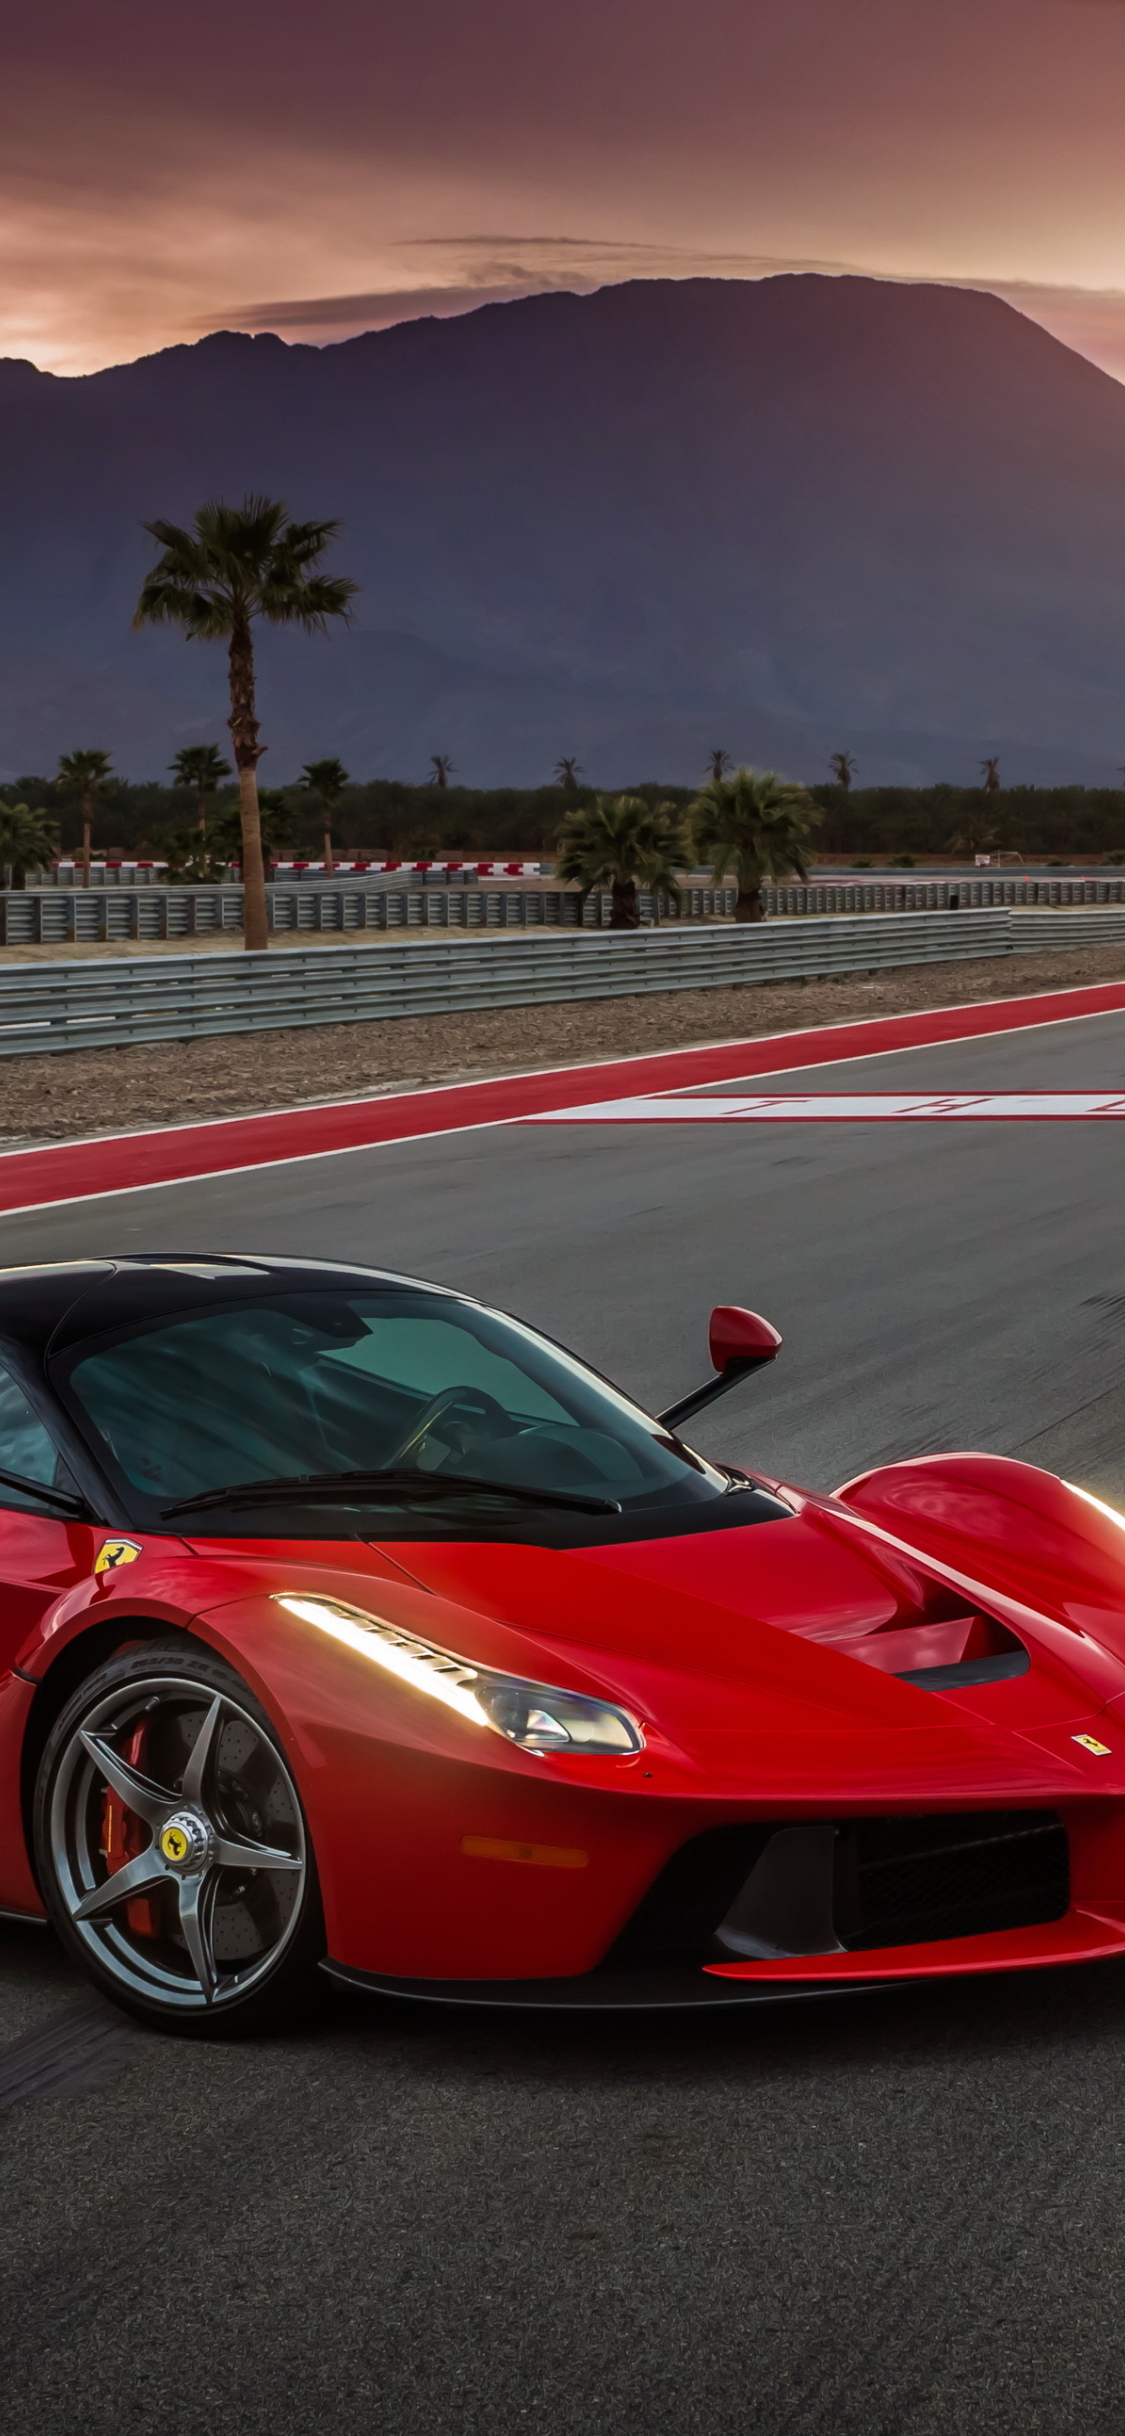 Ferrari Laferrari Pictures | Download Free Images on Unsplash